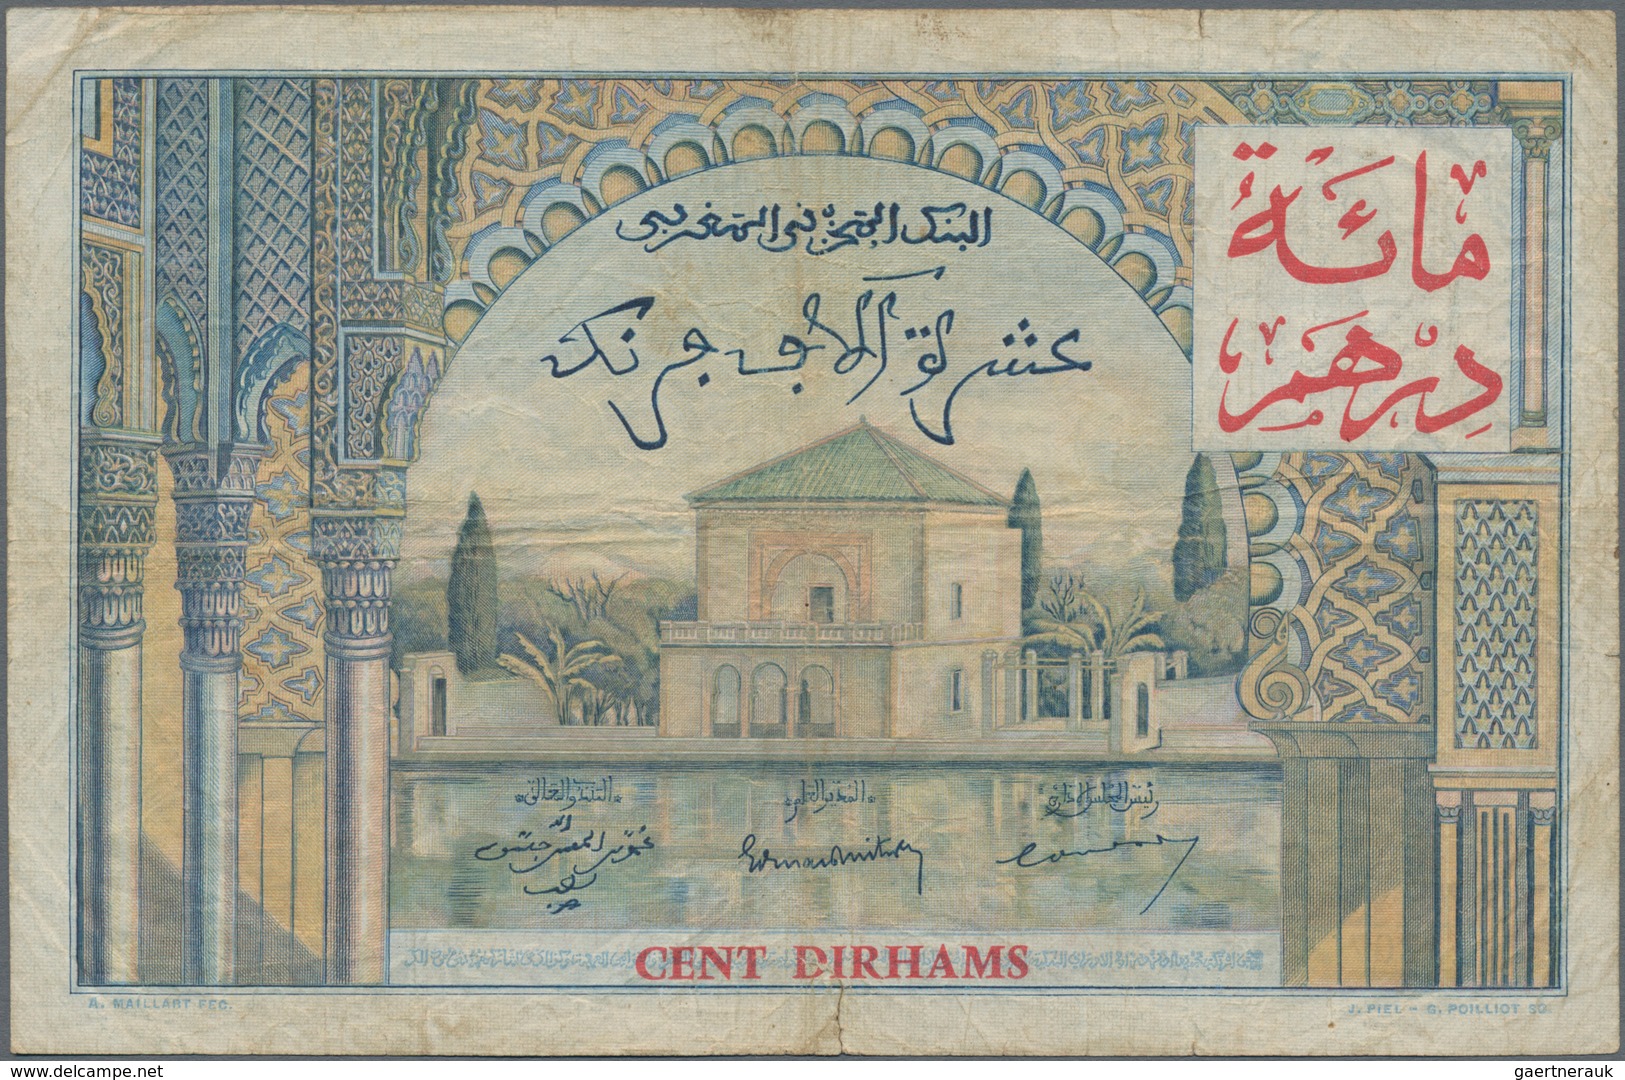 Morocco / Marokko: Banque D'État Du Maroc 100 Dirhams On 10.000 Francs 1955 (1959), P.52, Small Marg - Marokko